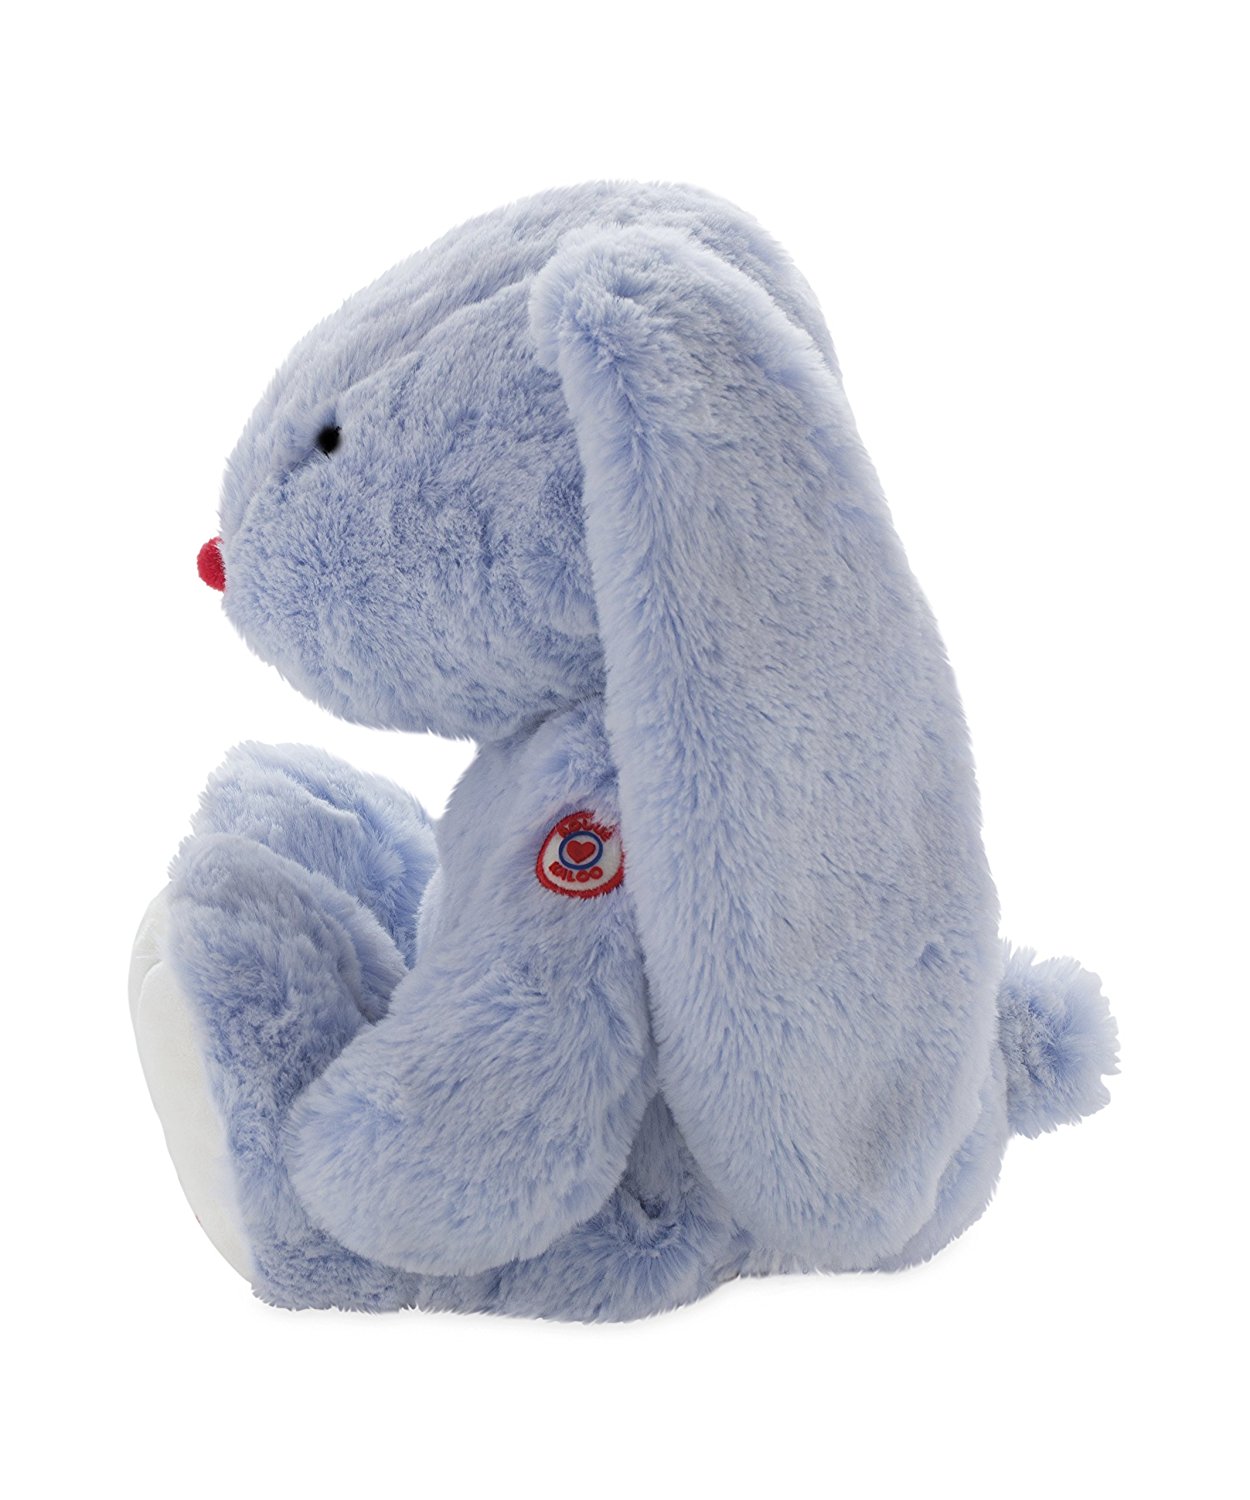 Мягкая игрушка из серии Руж - Заяц большой голубой, 38 см.  